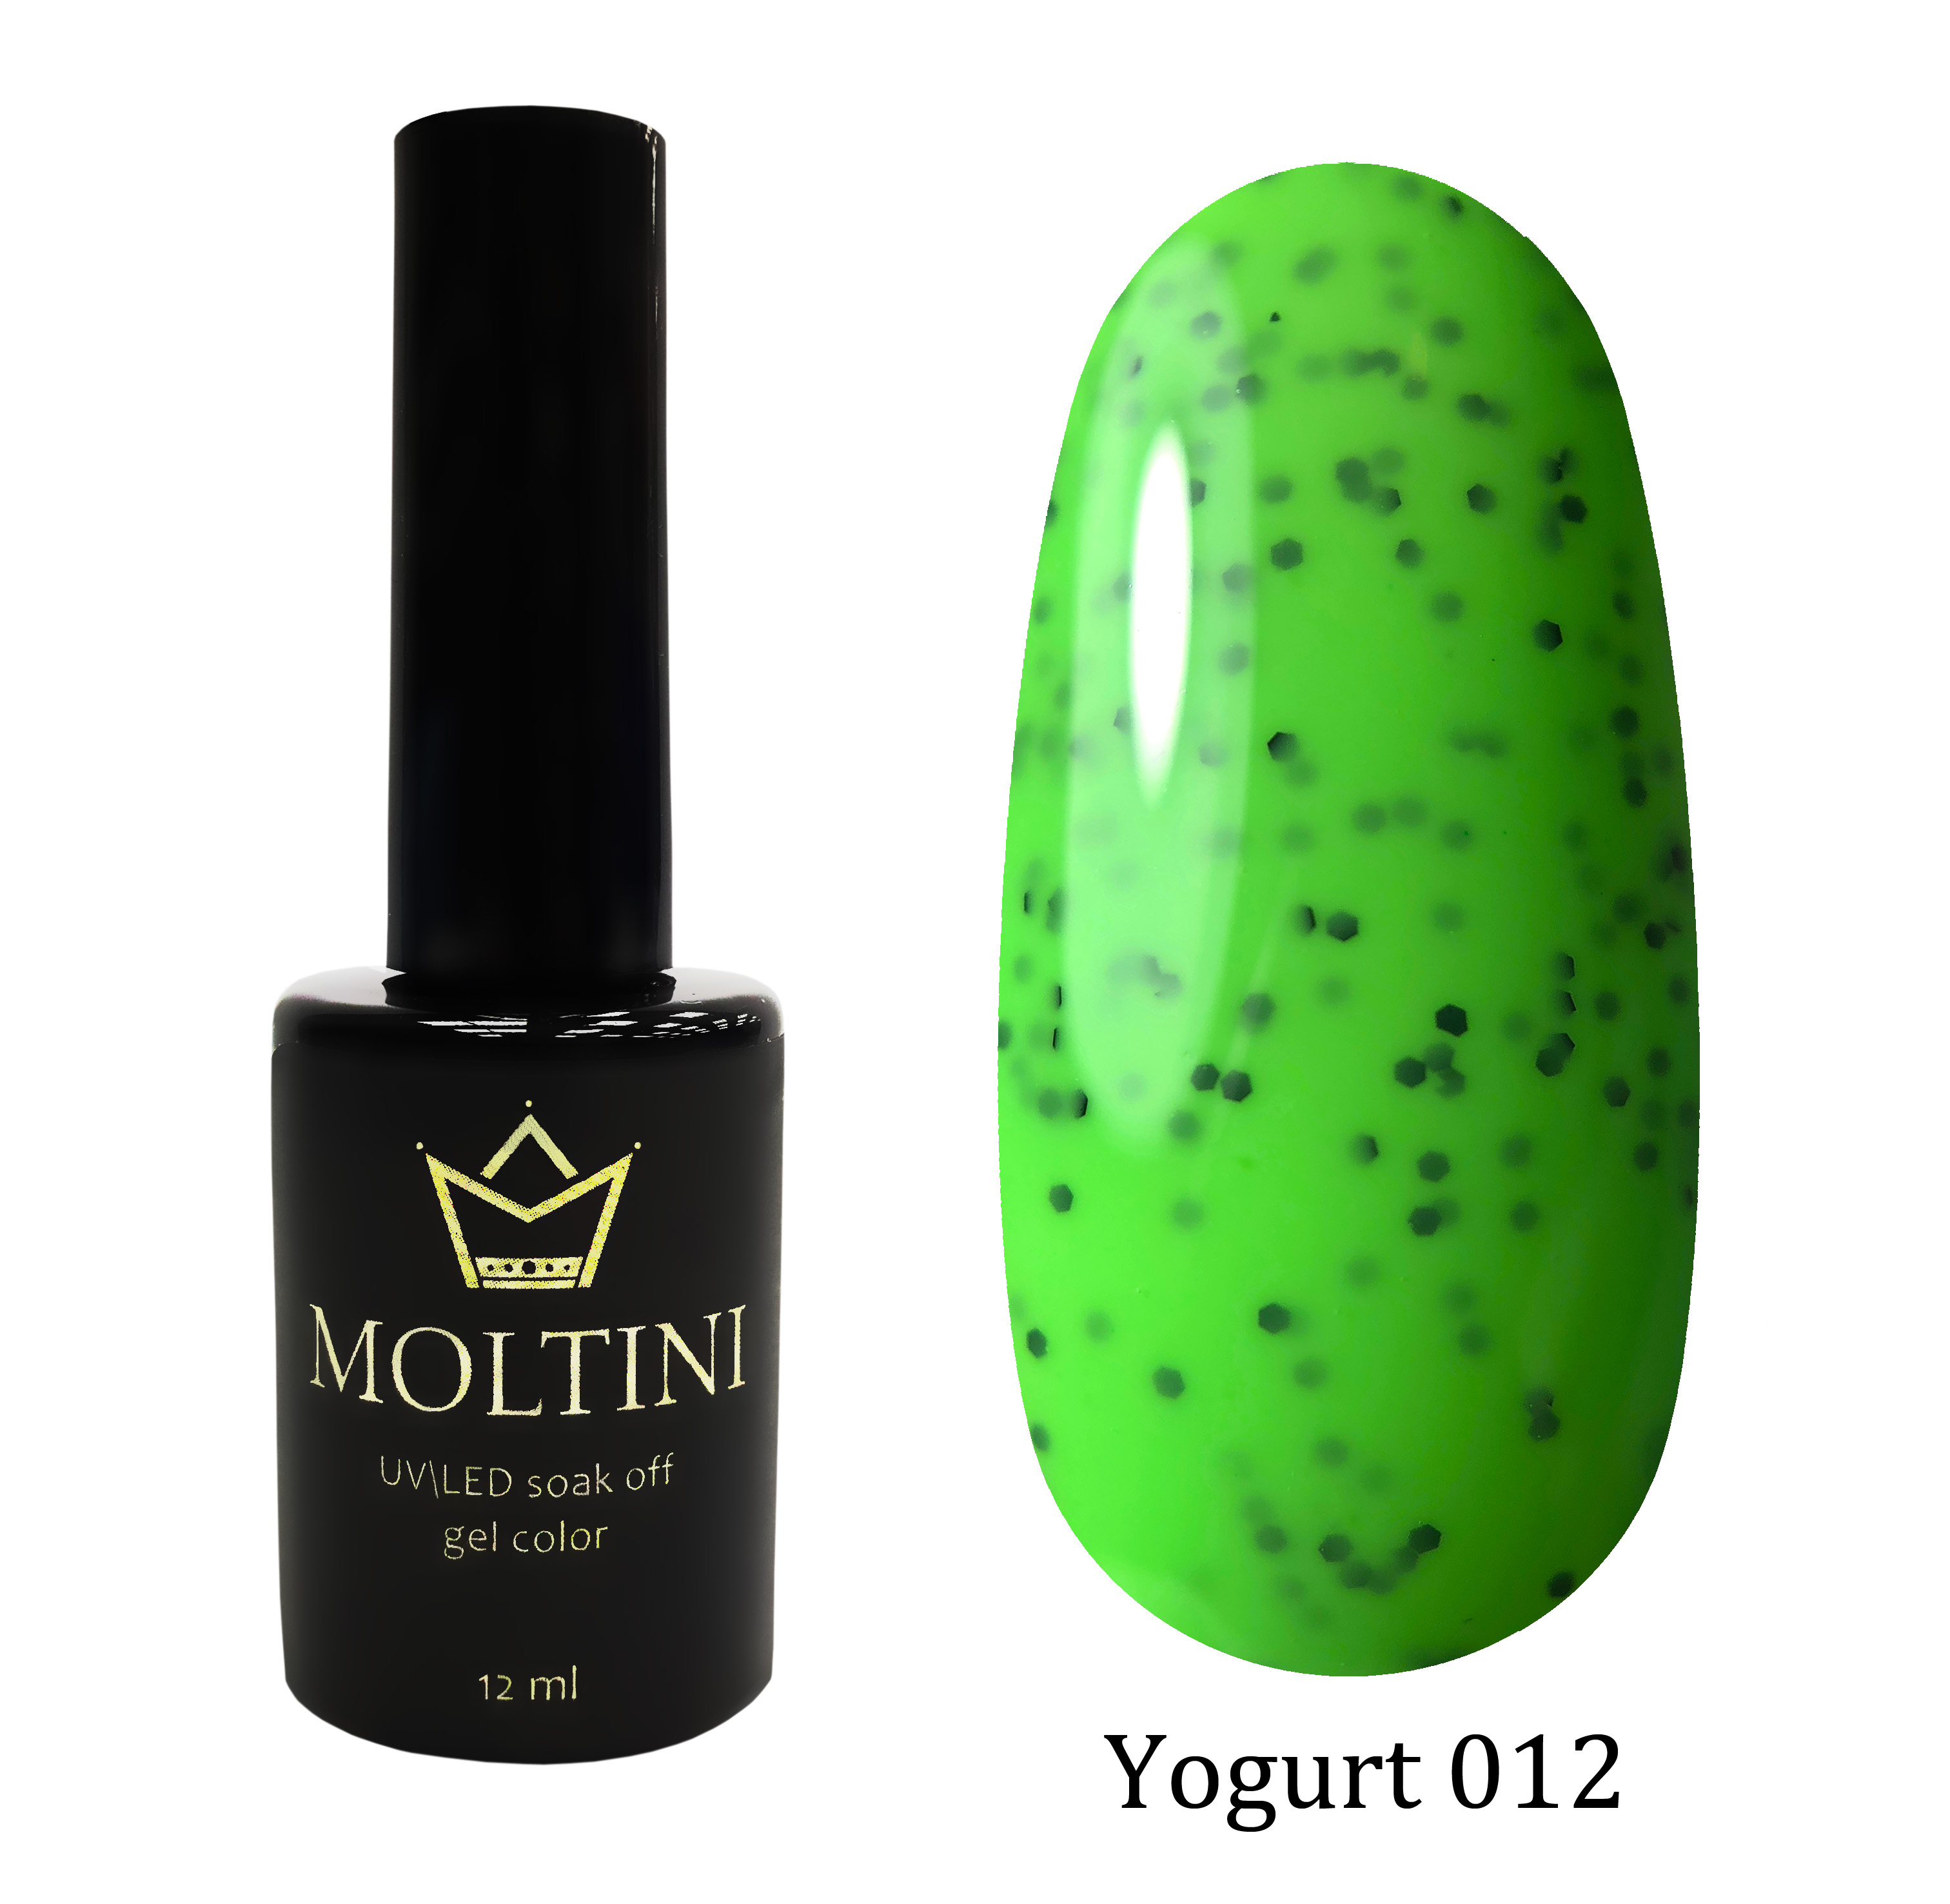 Moltini цветной гель-лак Yogurt 012, 12 мл